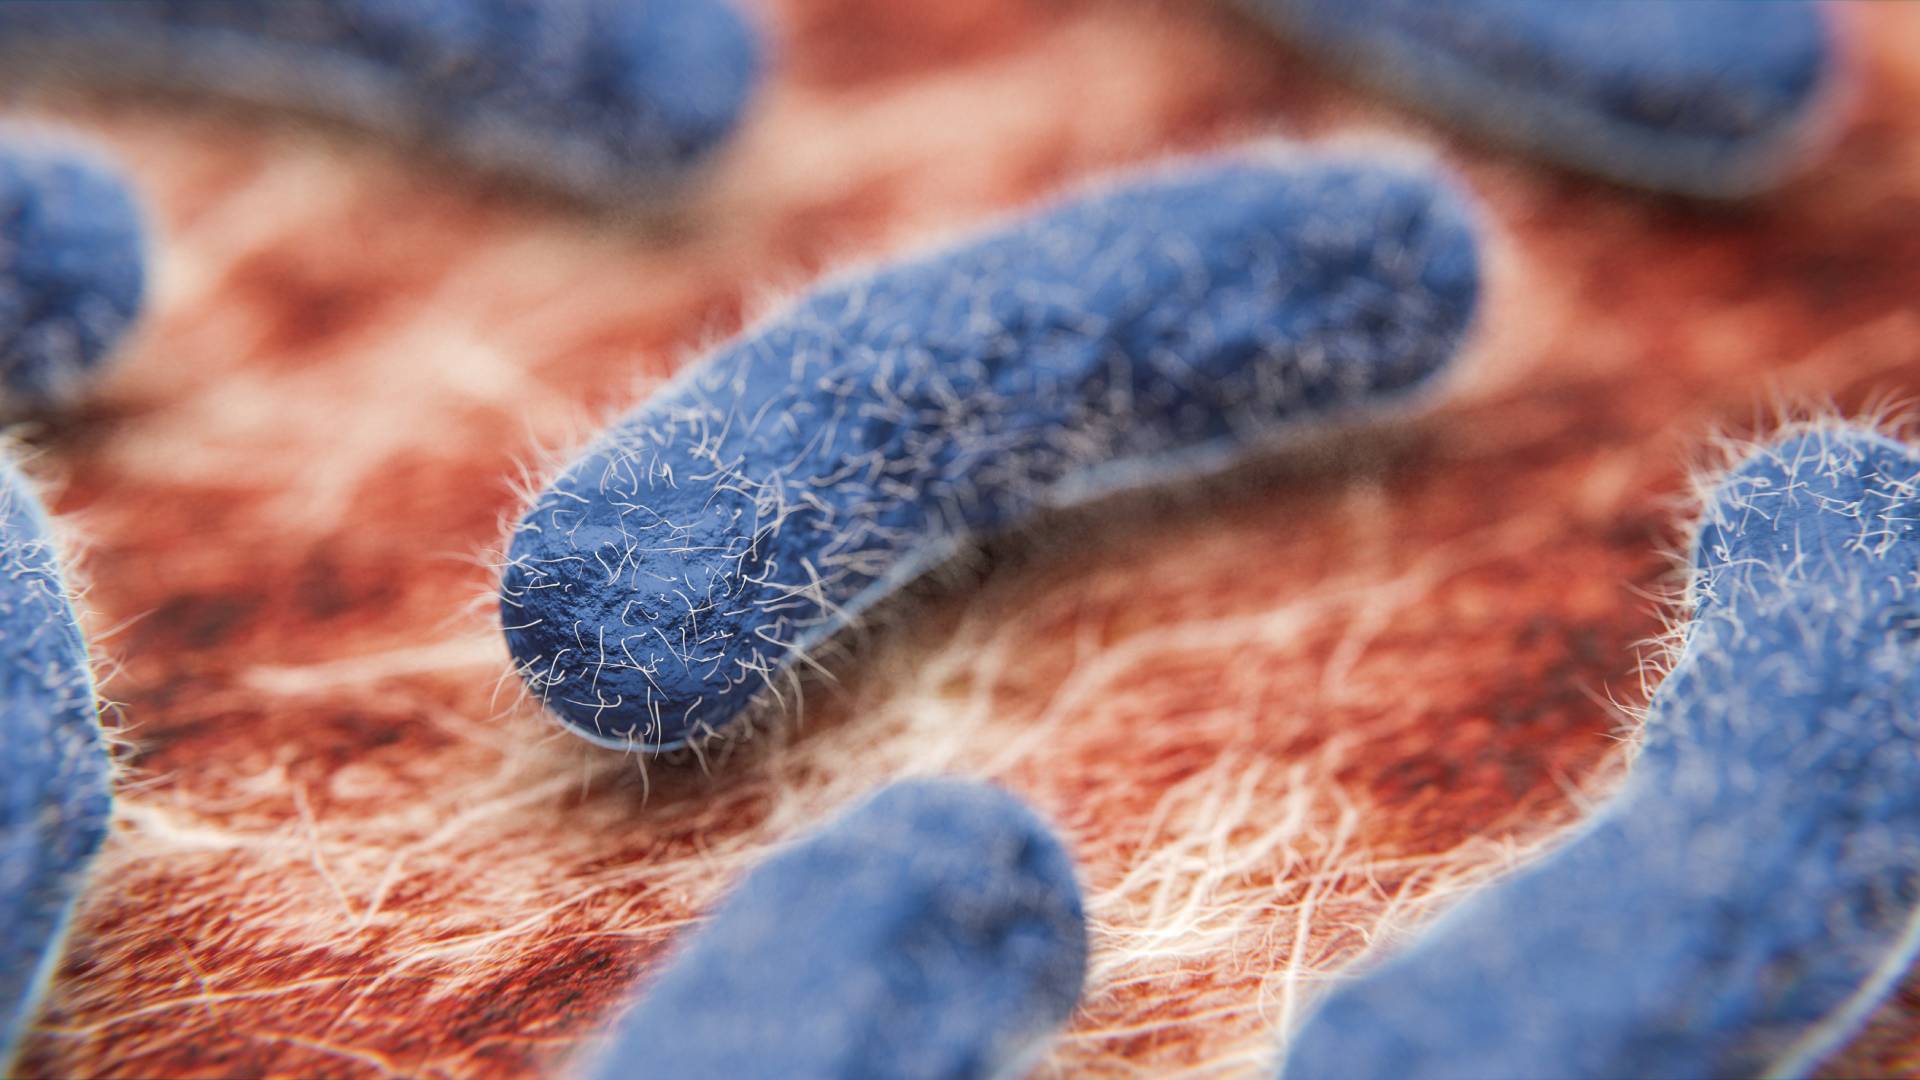 Mikrobe, Virus, Bakterium: Was ist der Unterschied? Definition